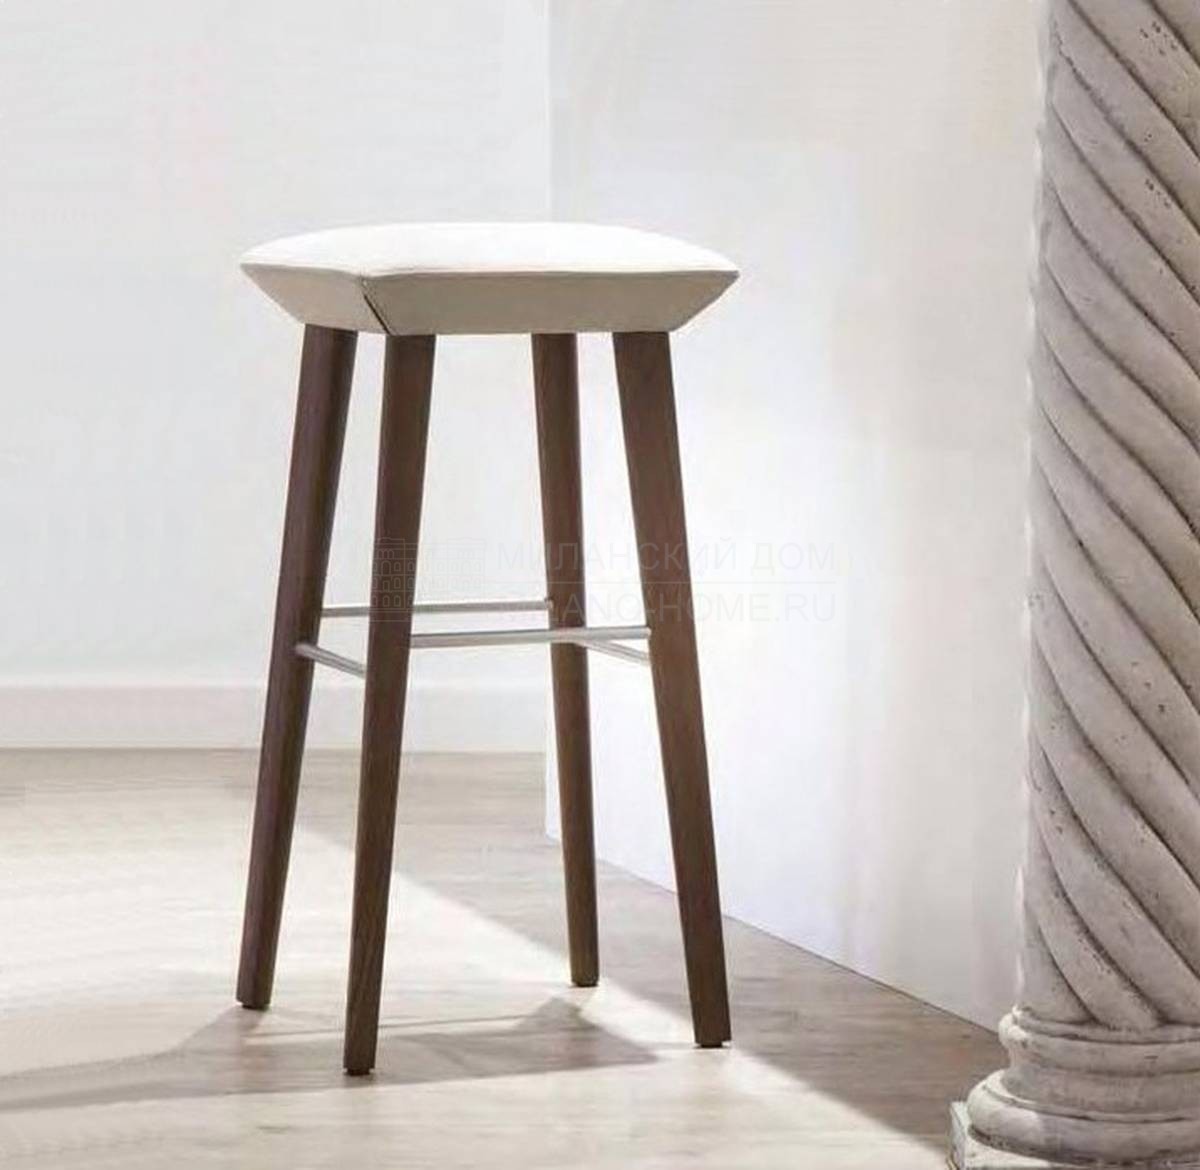 Барный стул Beret bar stool из Италии фабрики TONON